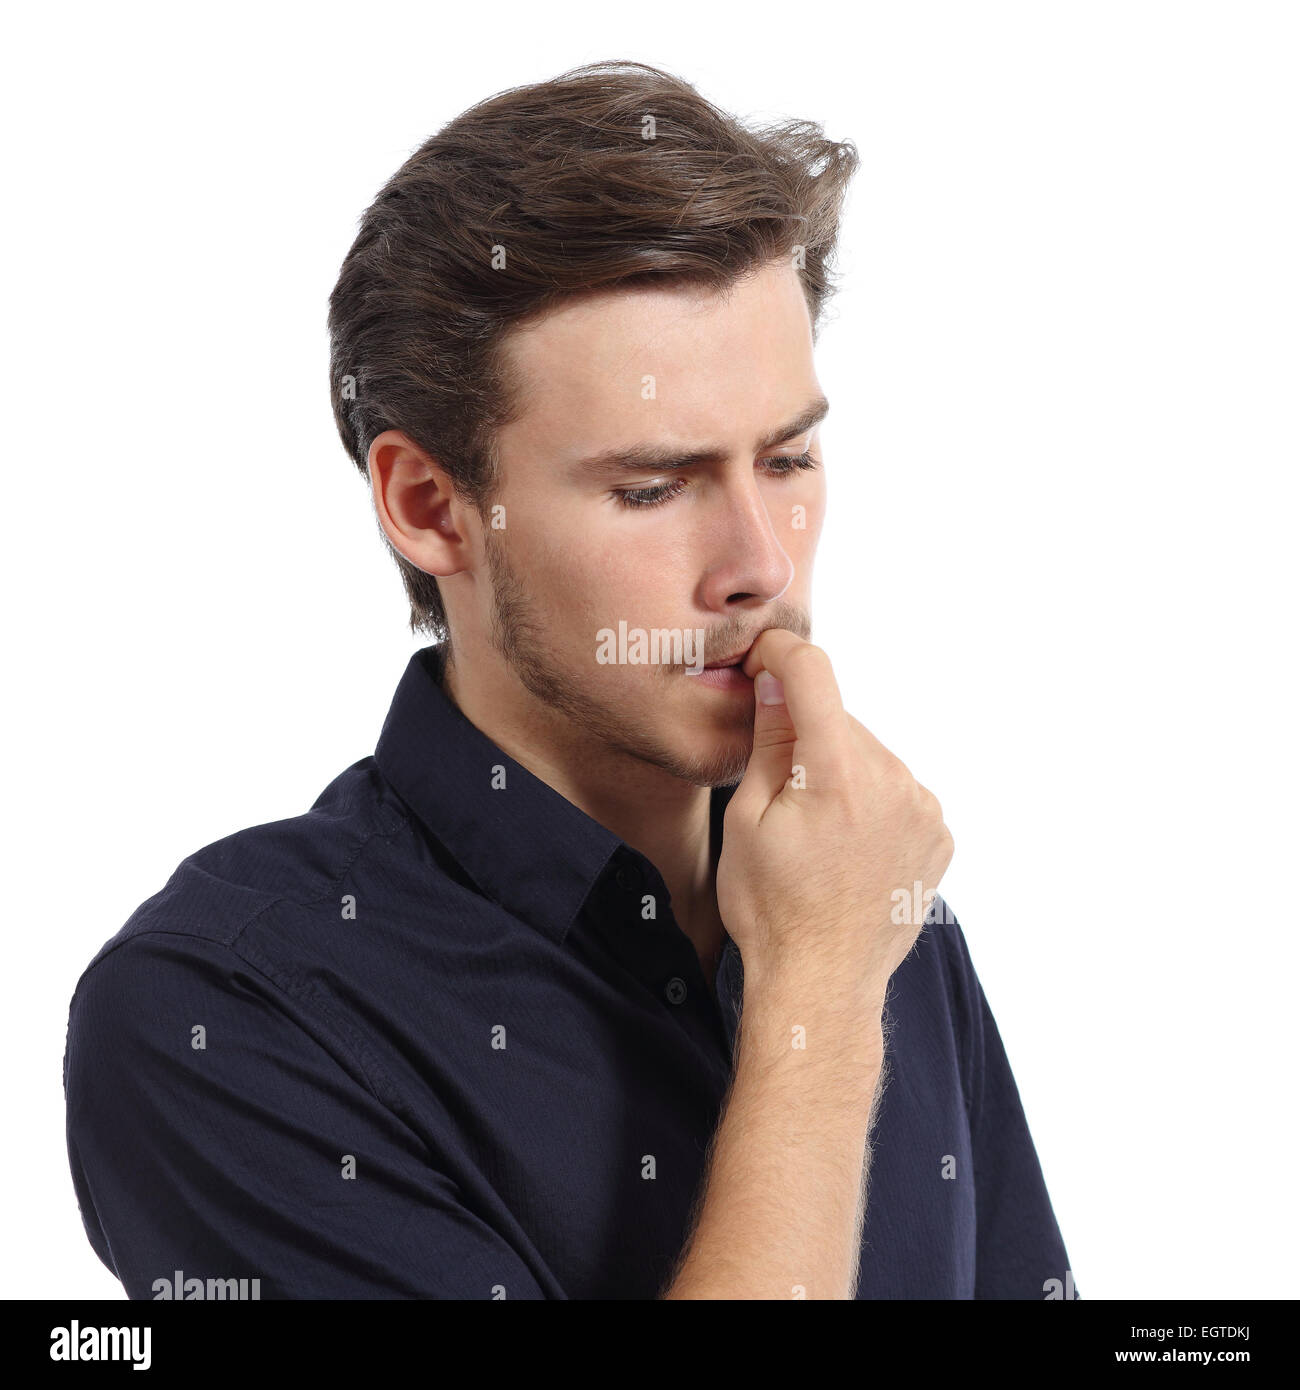 Giovane uomo ha sottolineato o preoccupati di mordere le unghie isolato su uno sfondo bianco Foto Stock